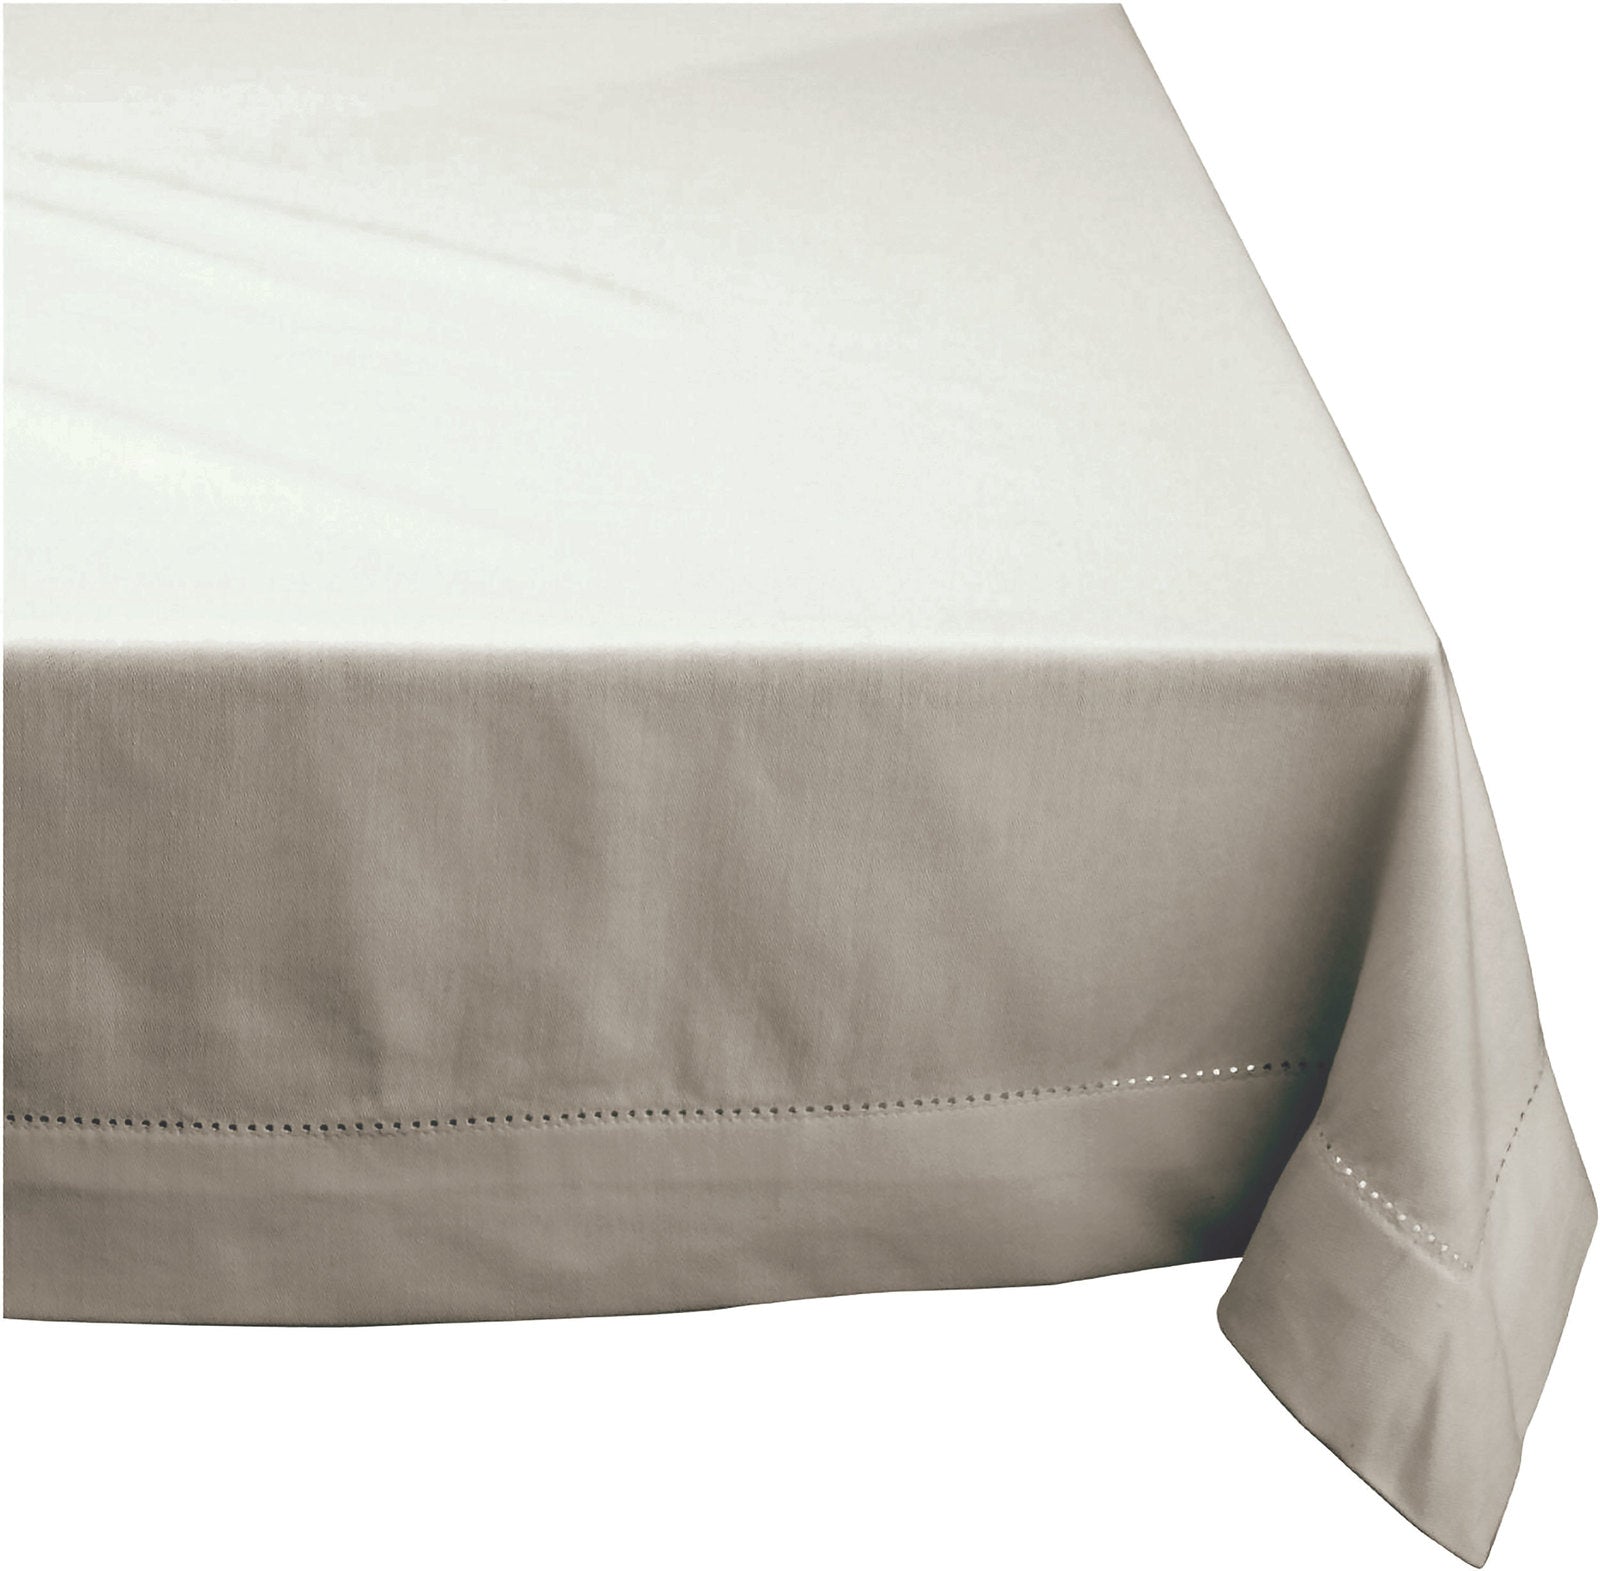 Elegant Hemstitch Tablecloth - 100% Cotton 205cm x 205cm in Grey